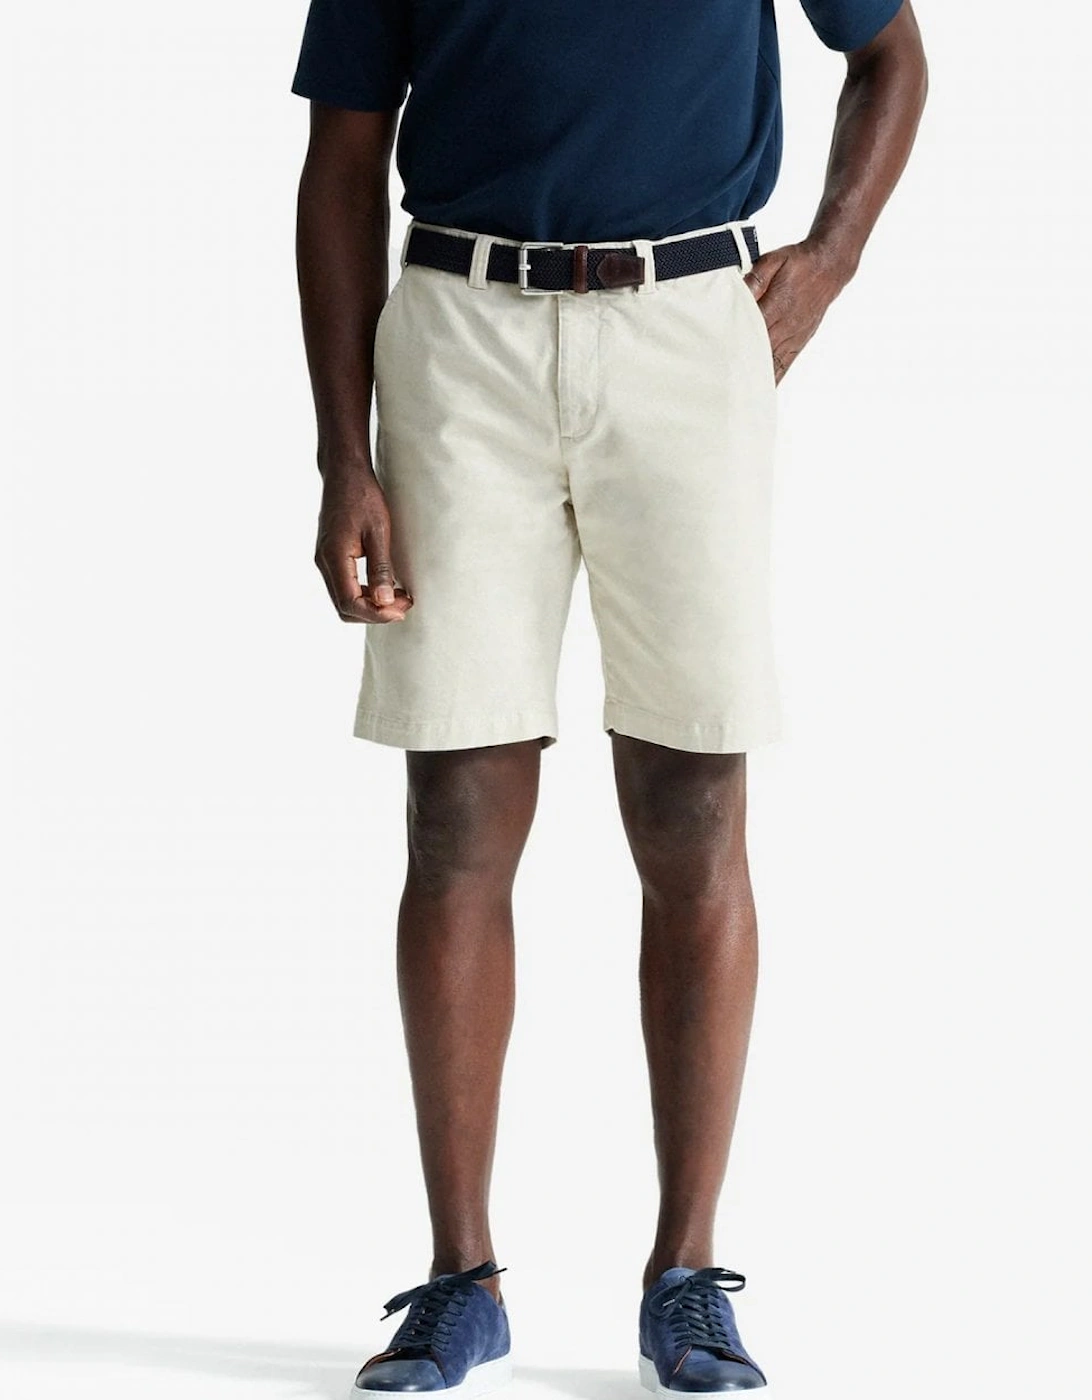 Frades Mens Italian Cotton Chino Shorts, 6 of 5